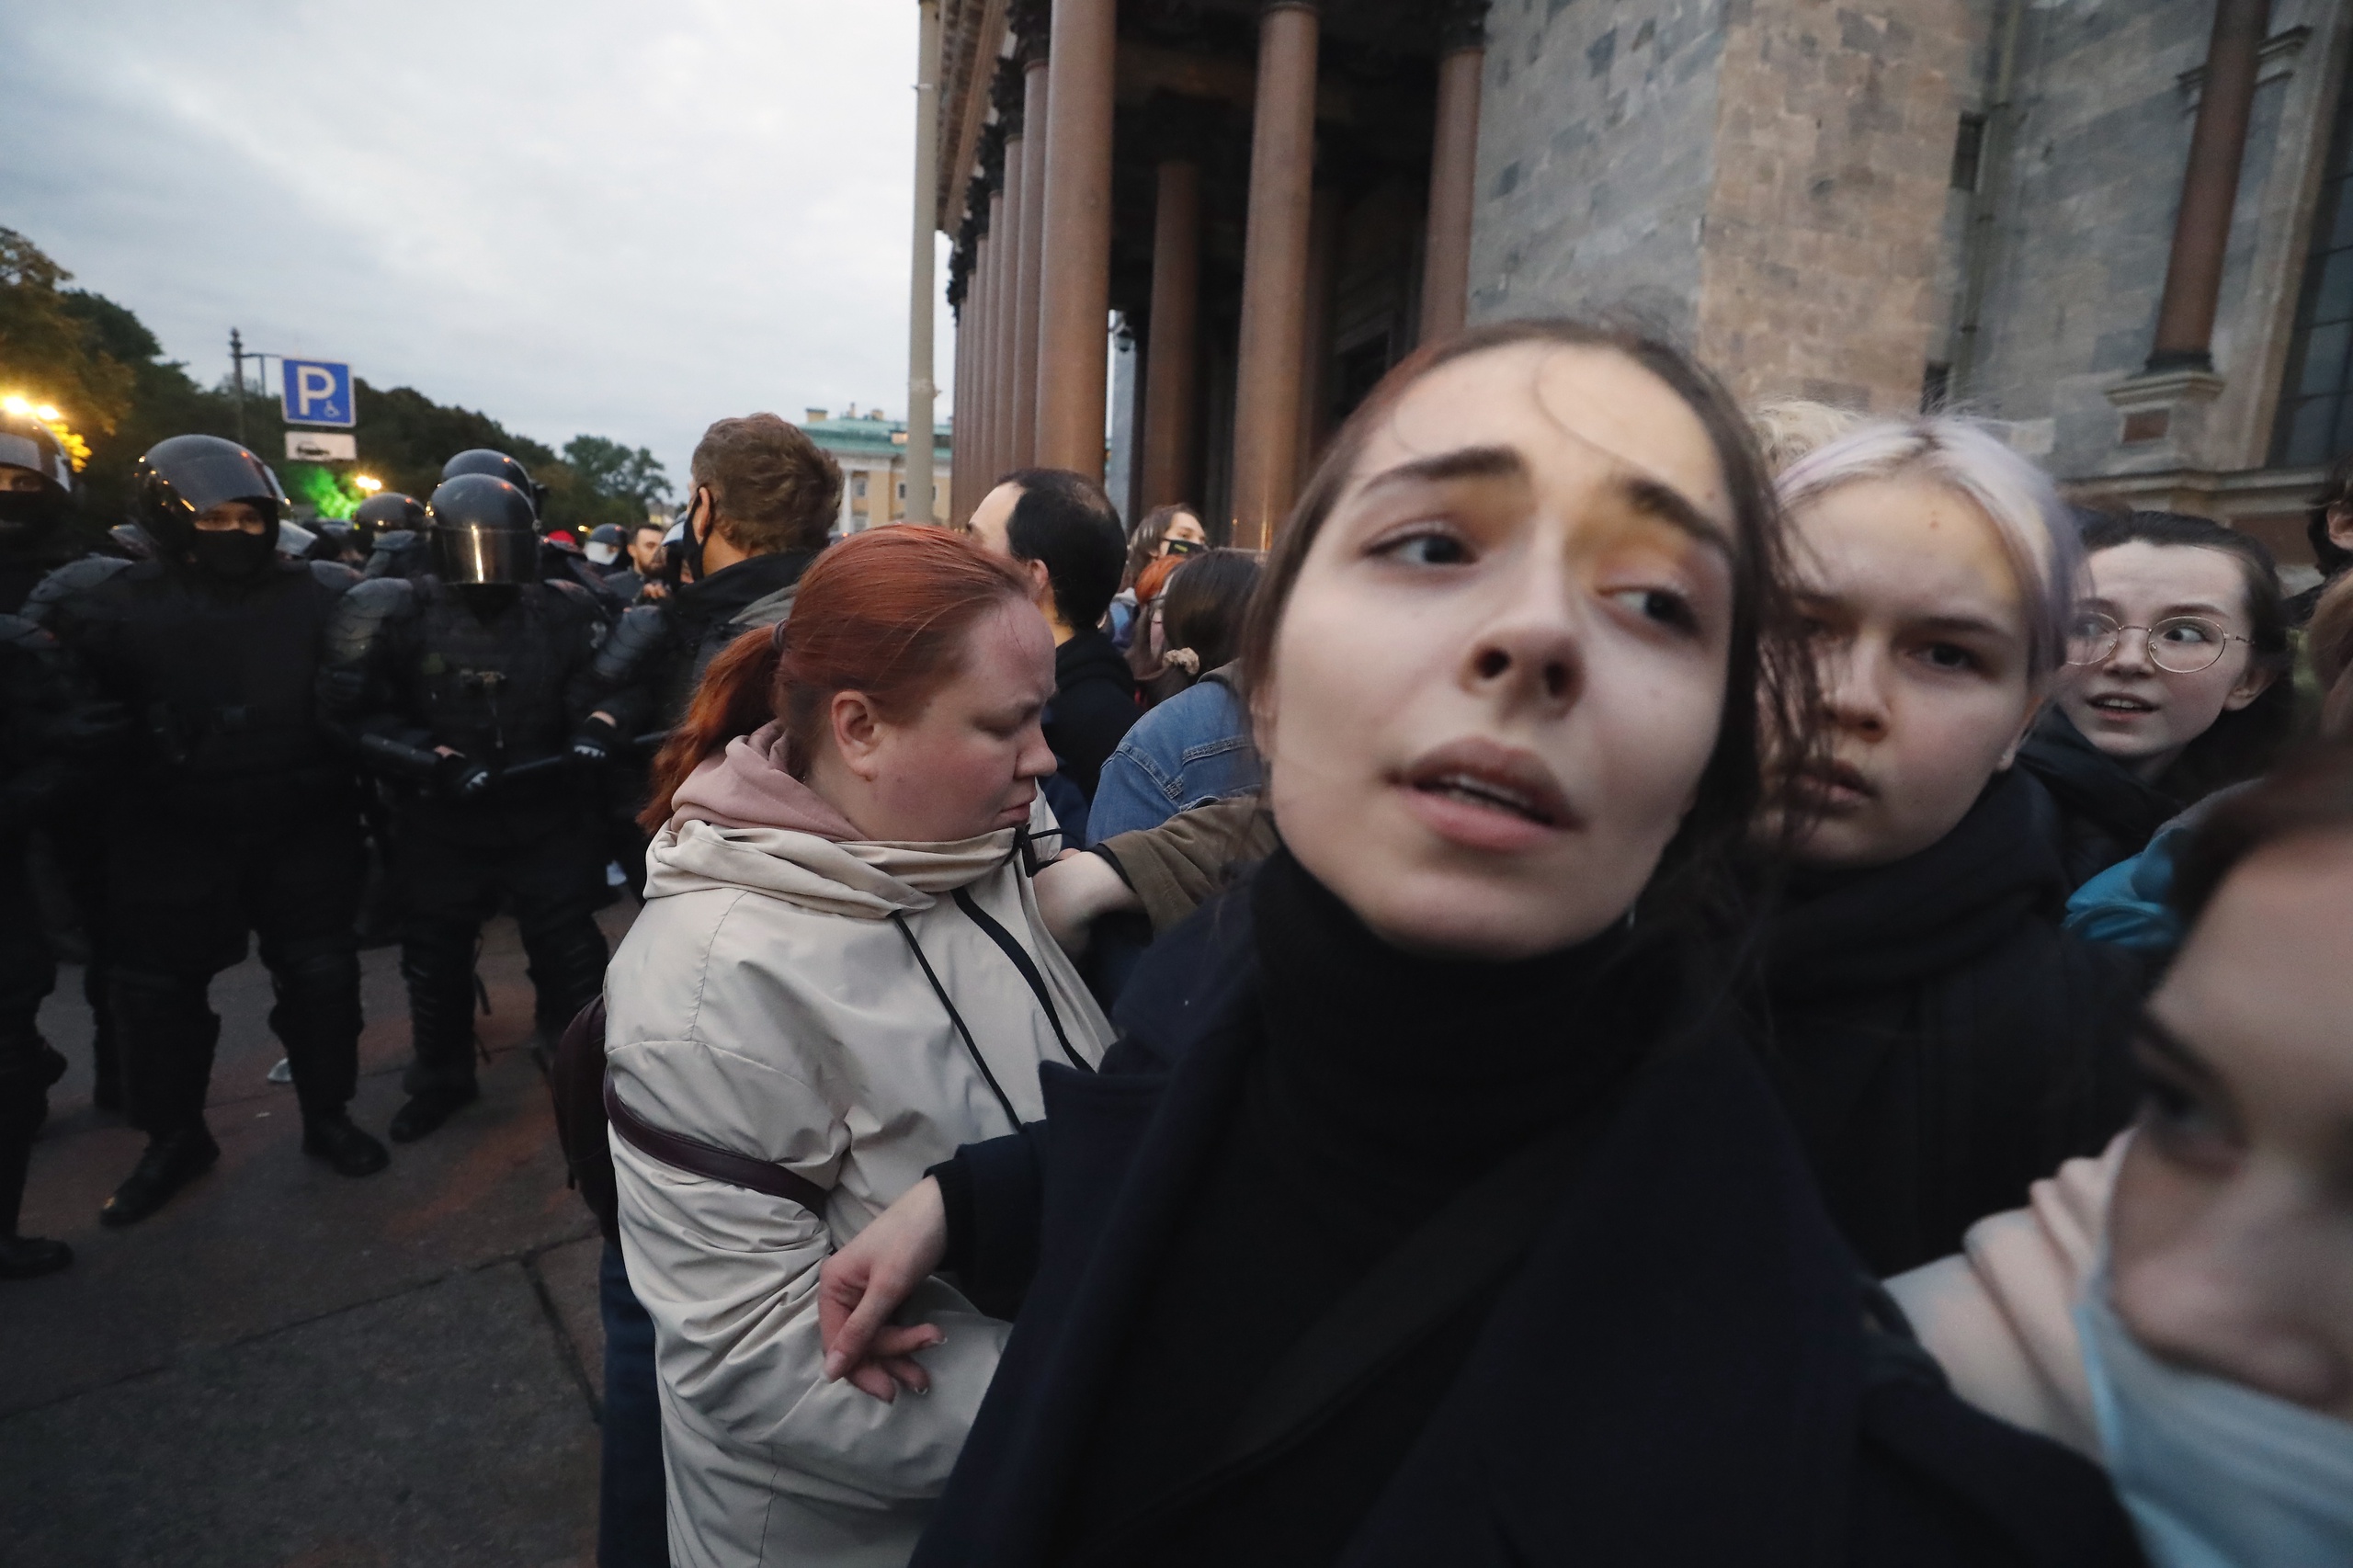 Russische oproerpolitie in St. Petersburg smoort een demonstratie tegen de door Poetin afgekondigde gedeeltelijke mobilisatie